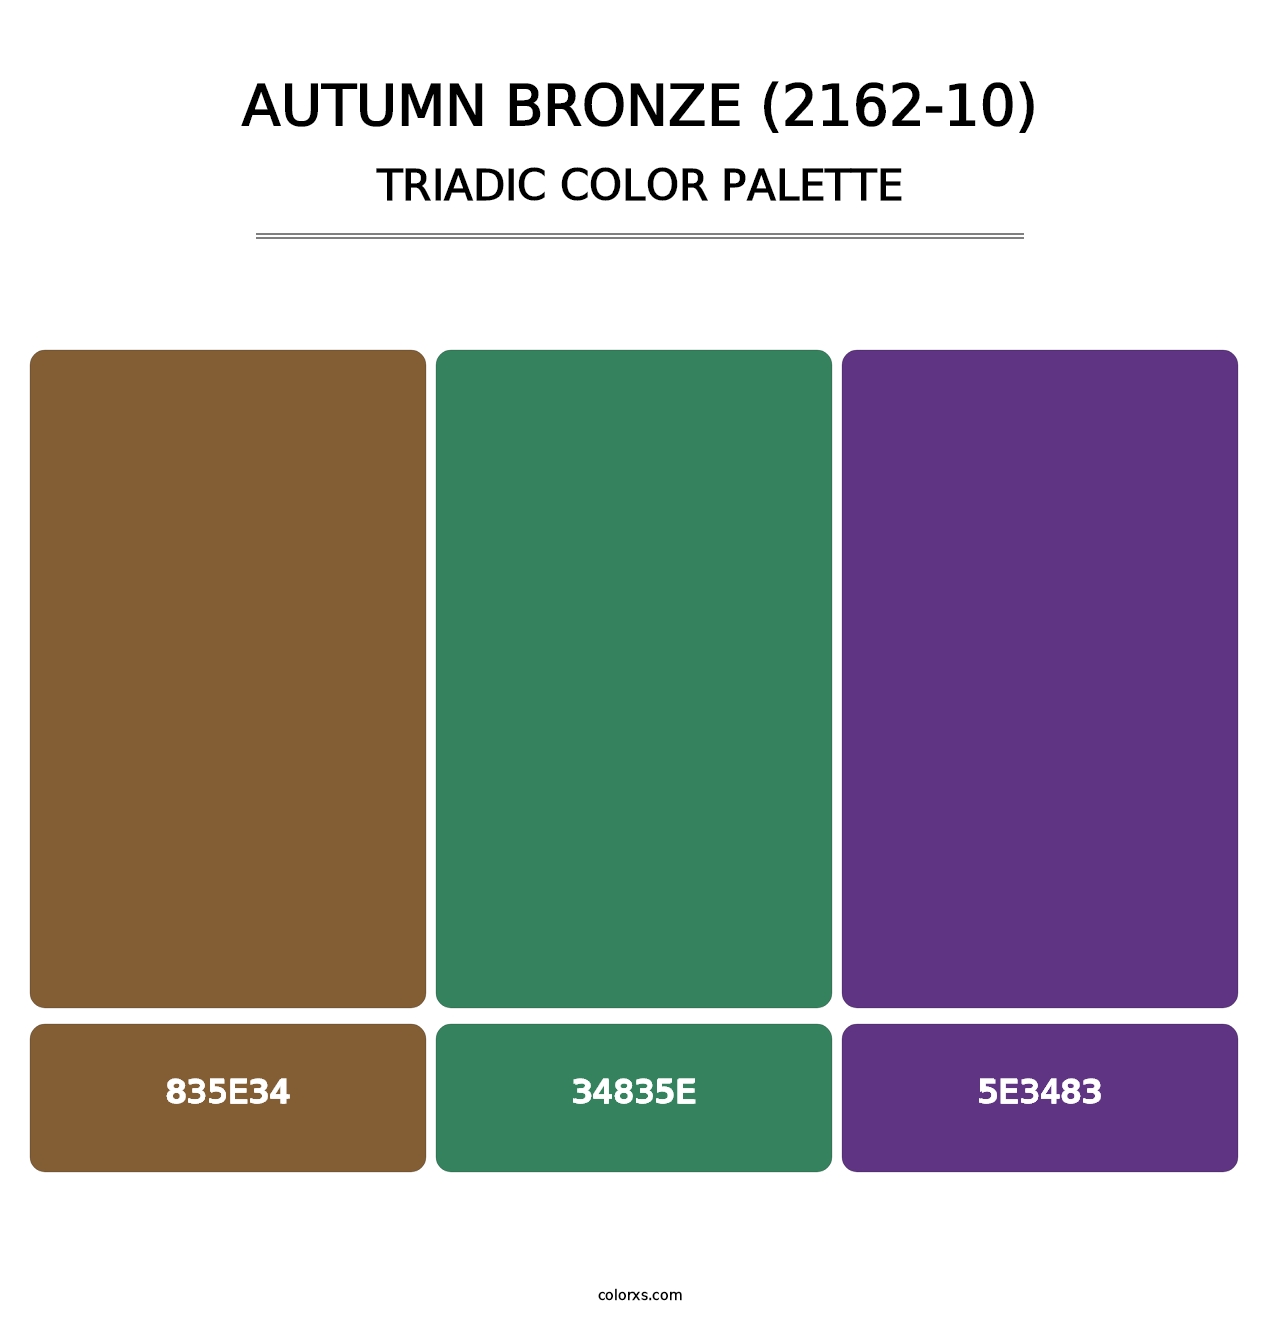 Autumn Bronze (2162-10) - Triadic Color Palette